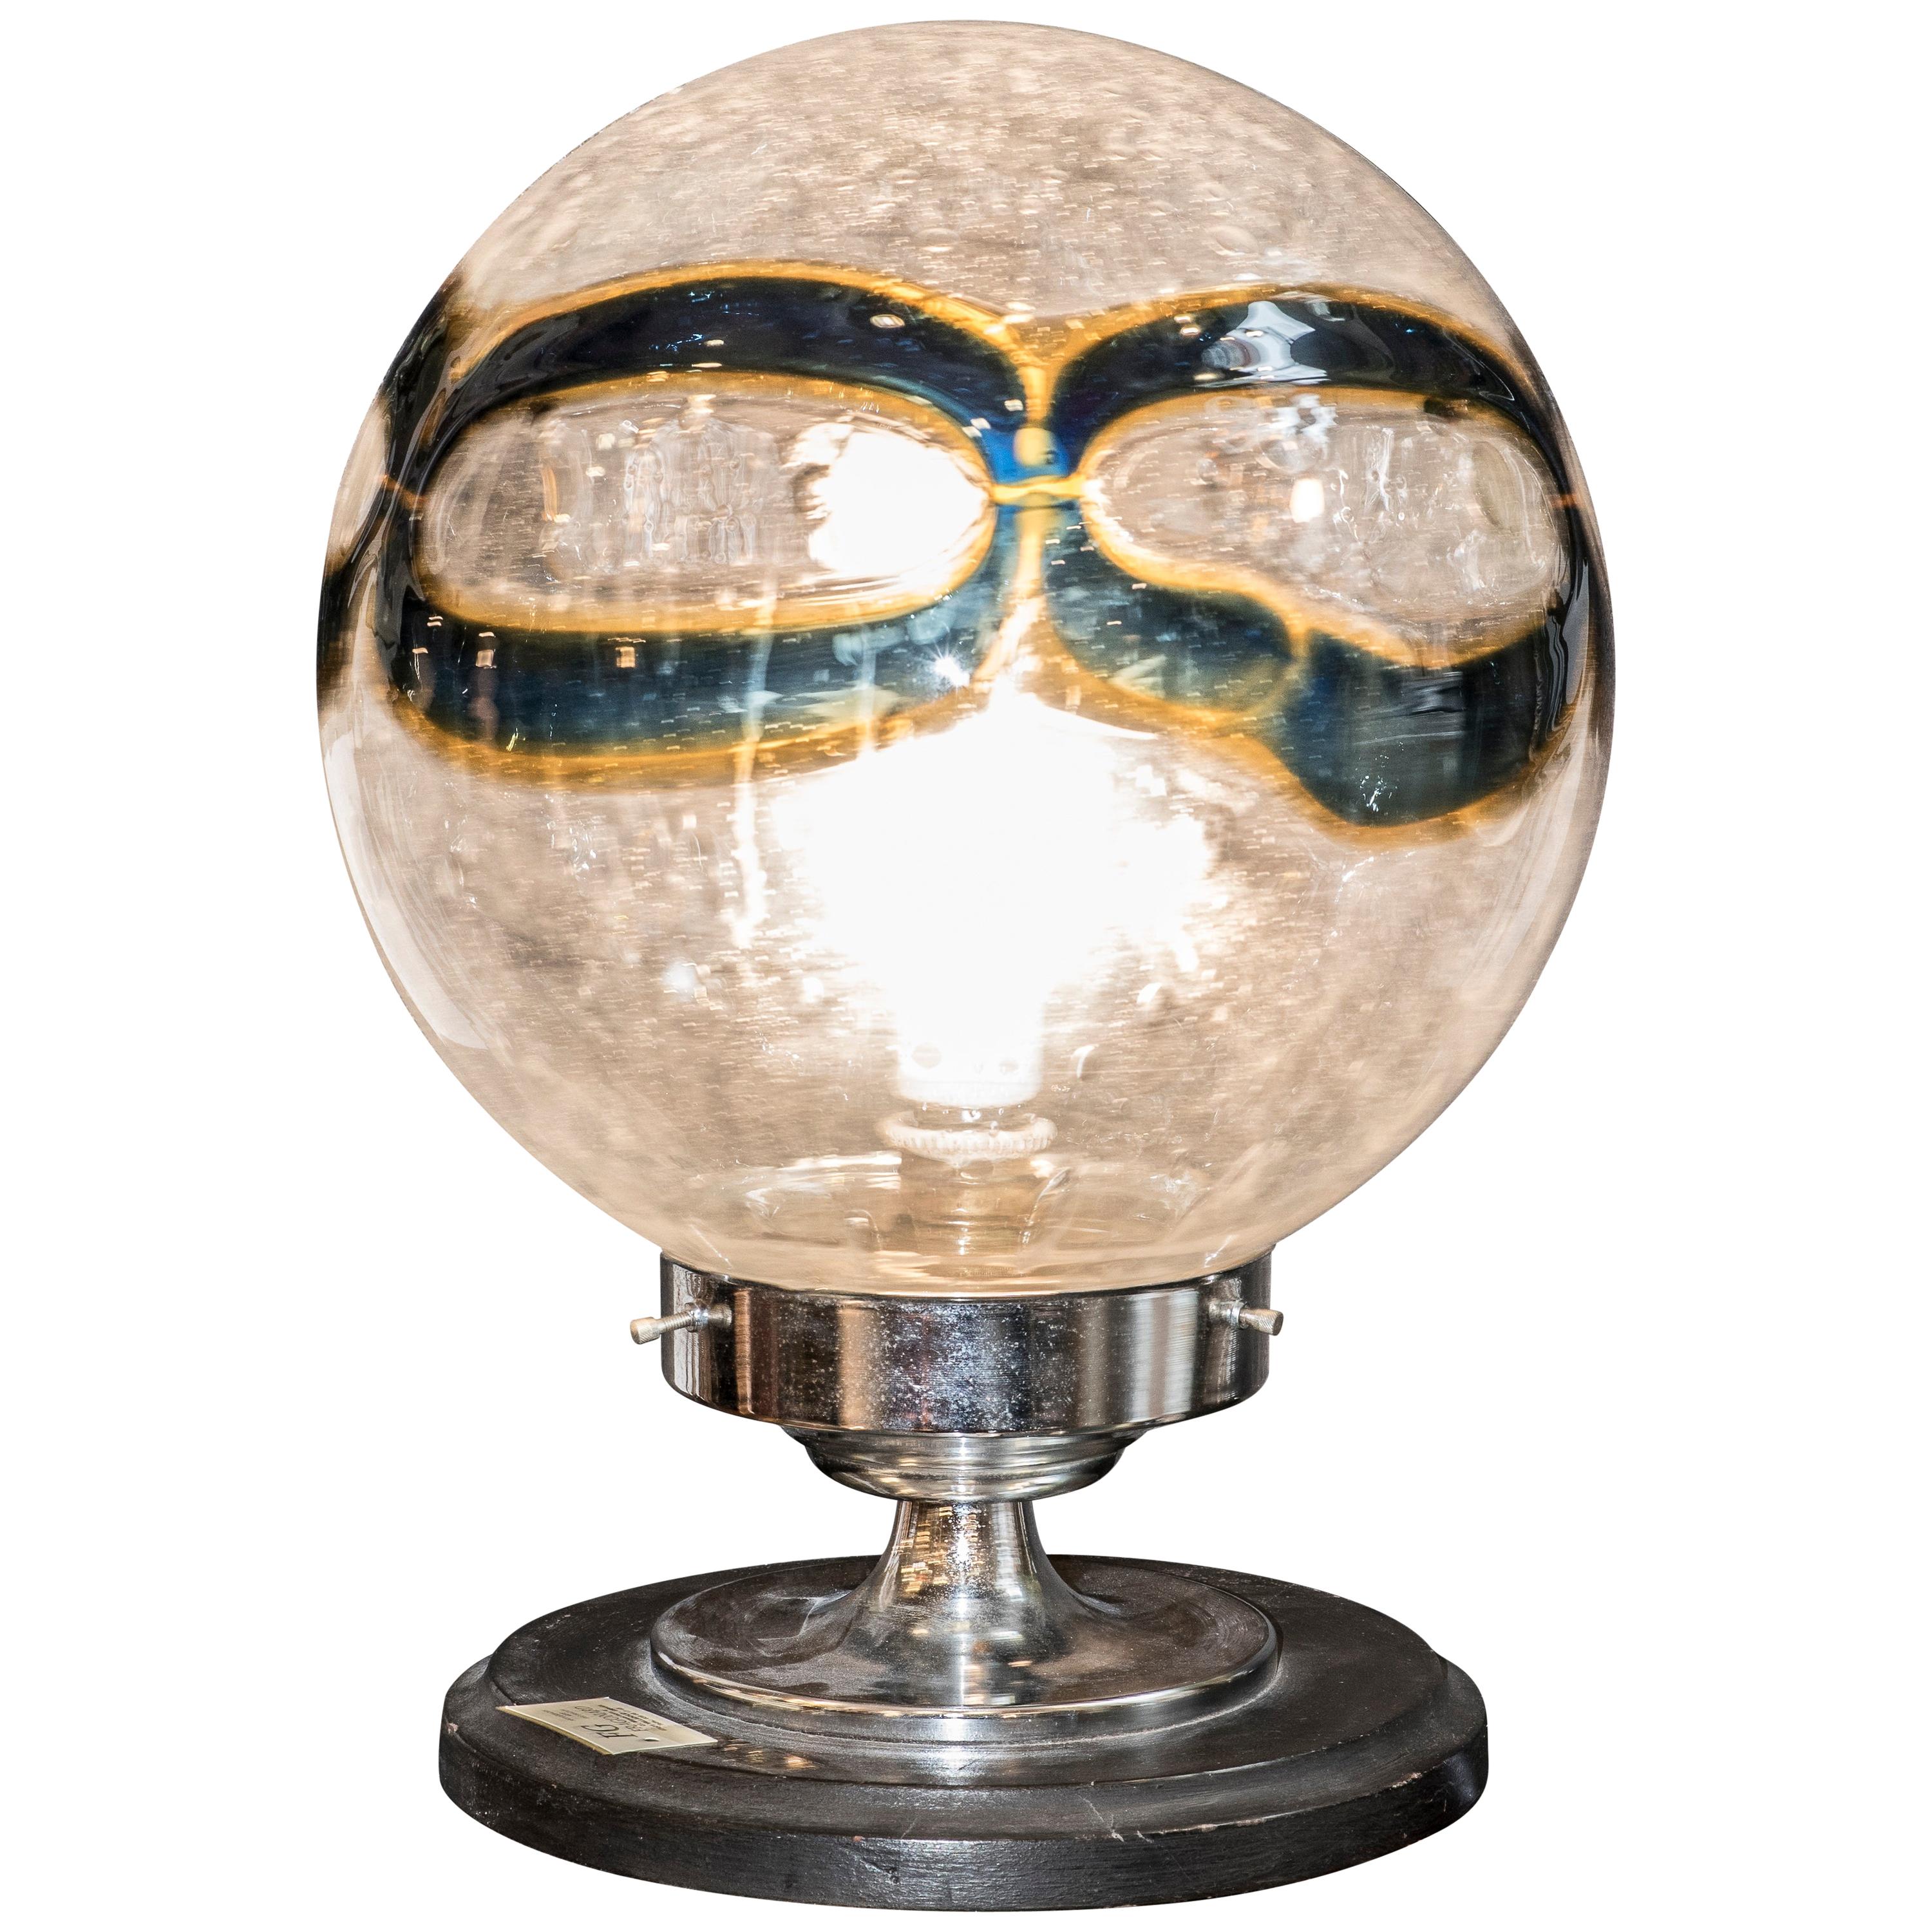 Midcentury Murano whiteblueyellow blown glass globe table lamp Italy 1970